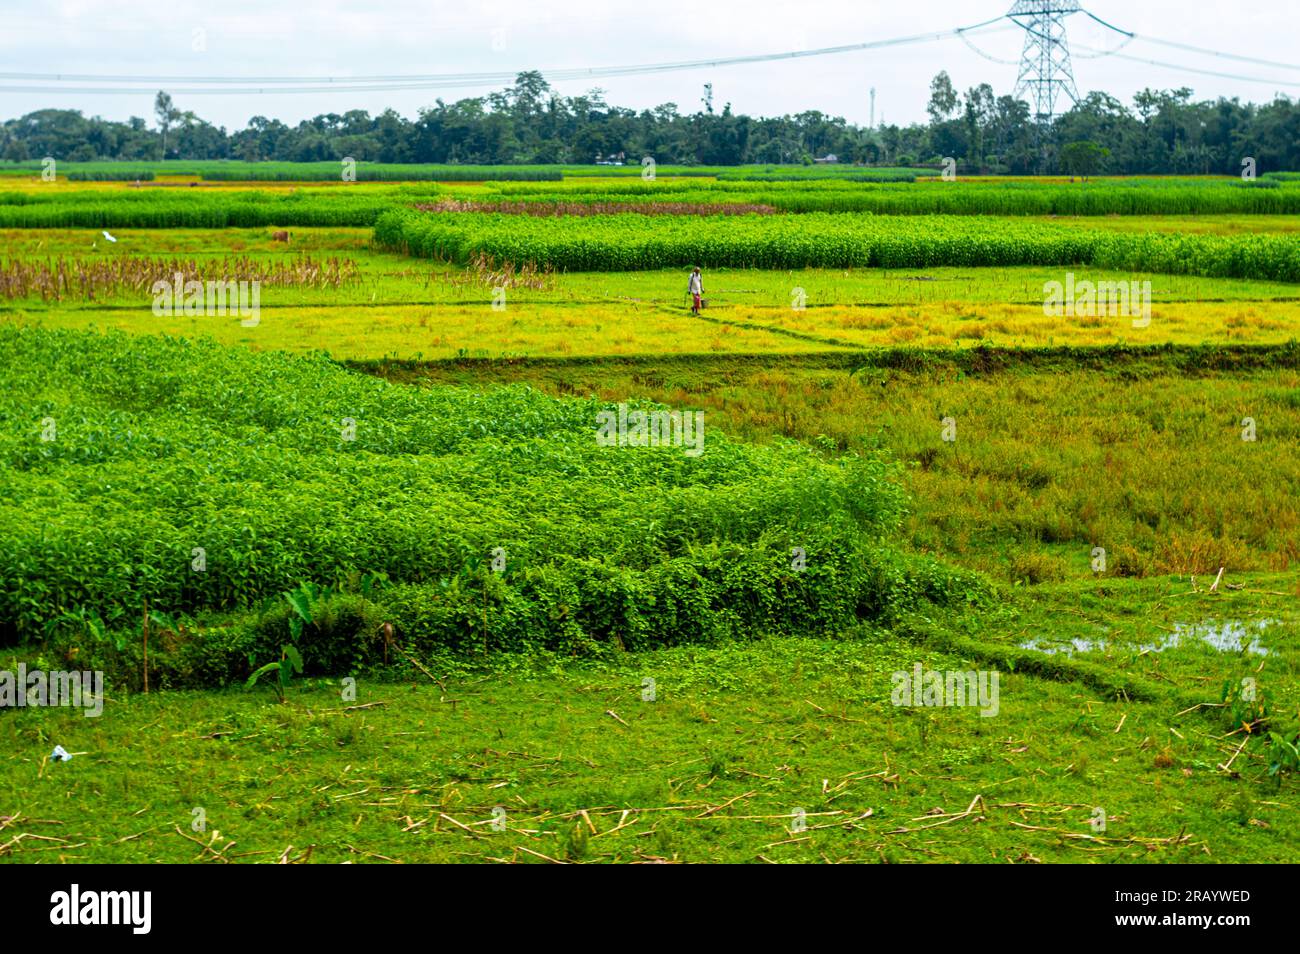 Farbenfrohes Landwirtschaftsfeld vor klarem Himmel im Hintergrund. Landschaftslandschaft des ländlichen indischen Dorfes. Assam Indien Südasiatisch-Pazifischer Raum Stockfoto